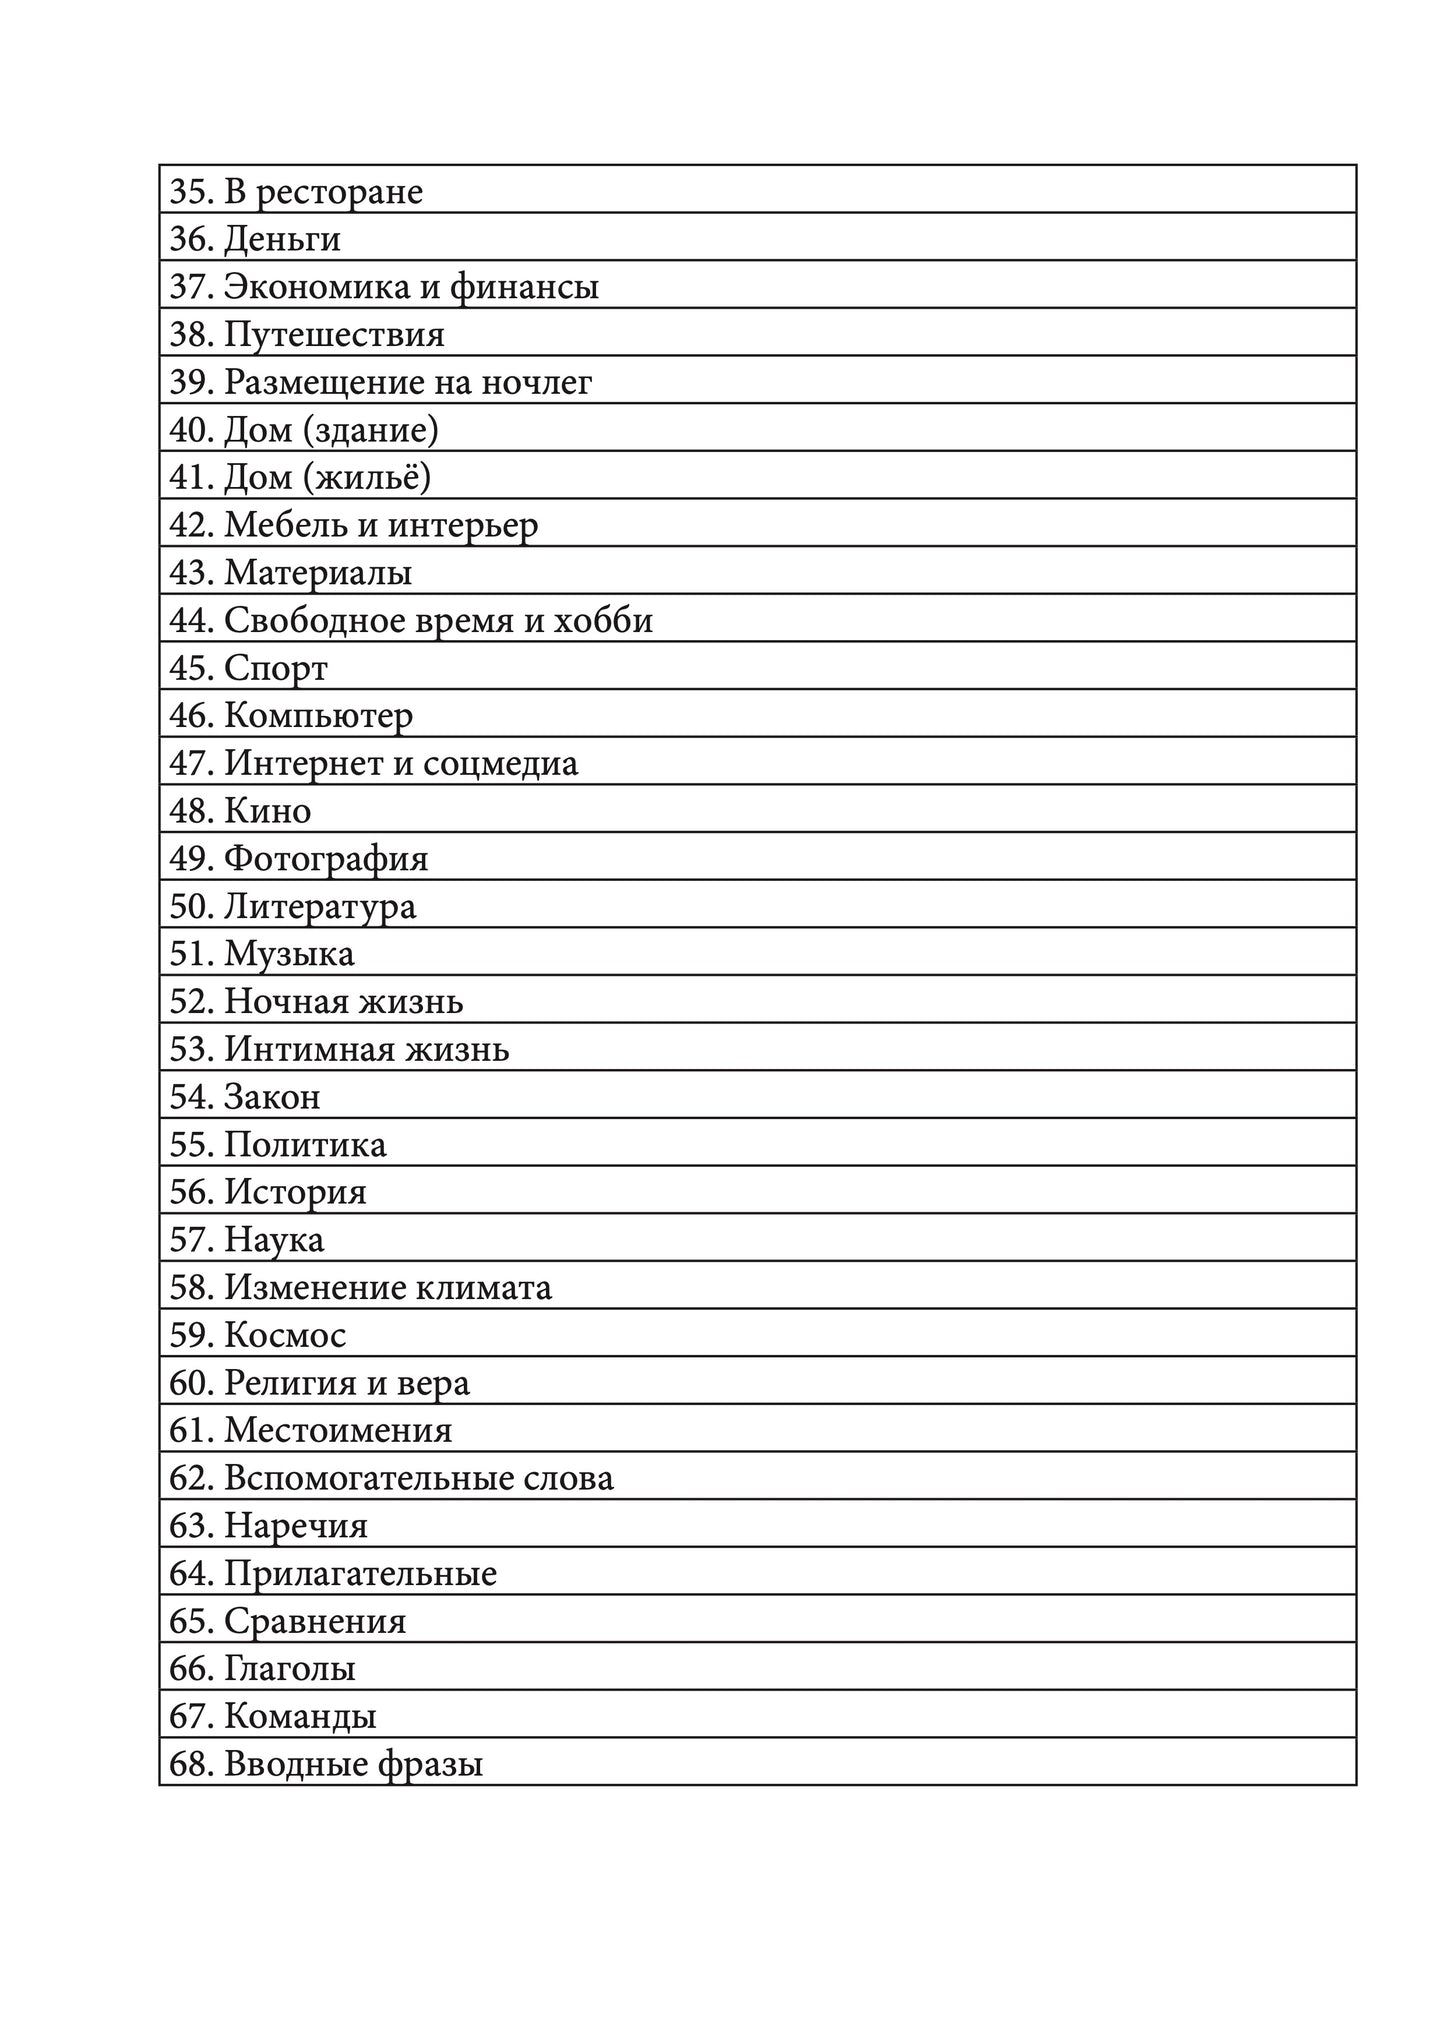 Русинский язык: тетрадь-словарь